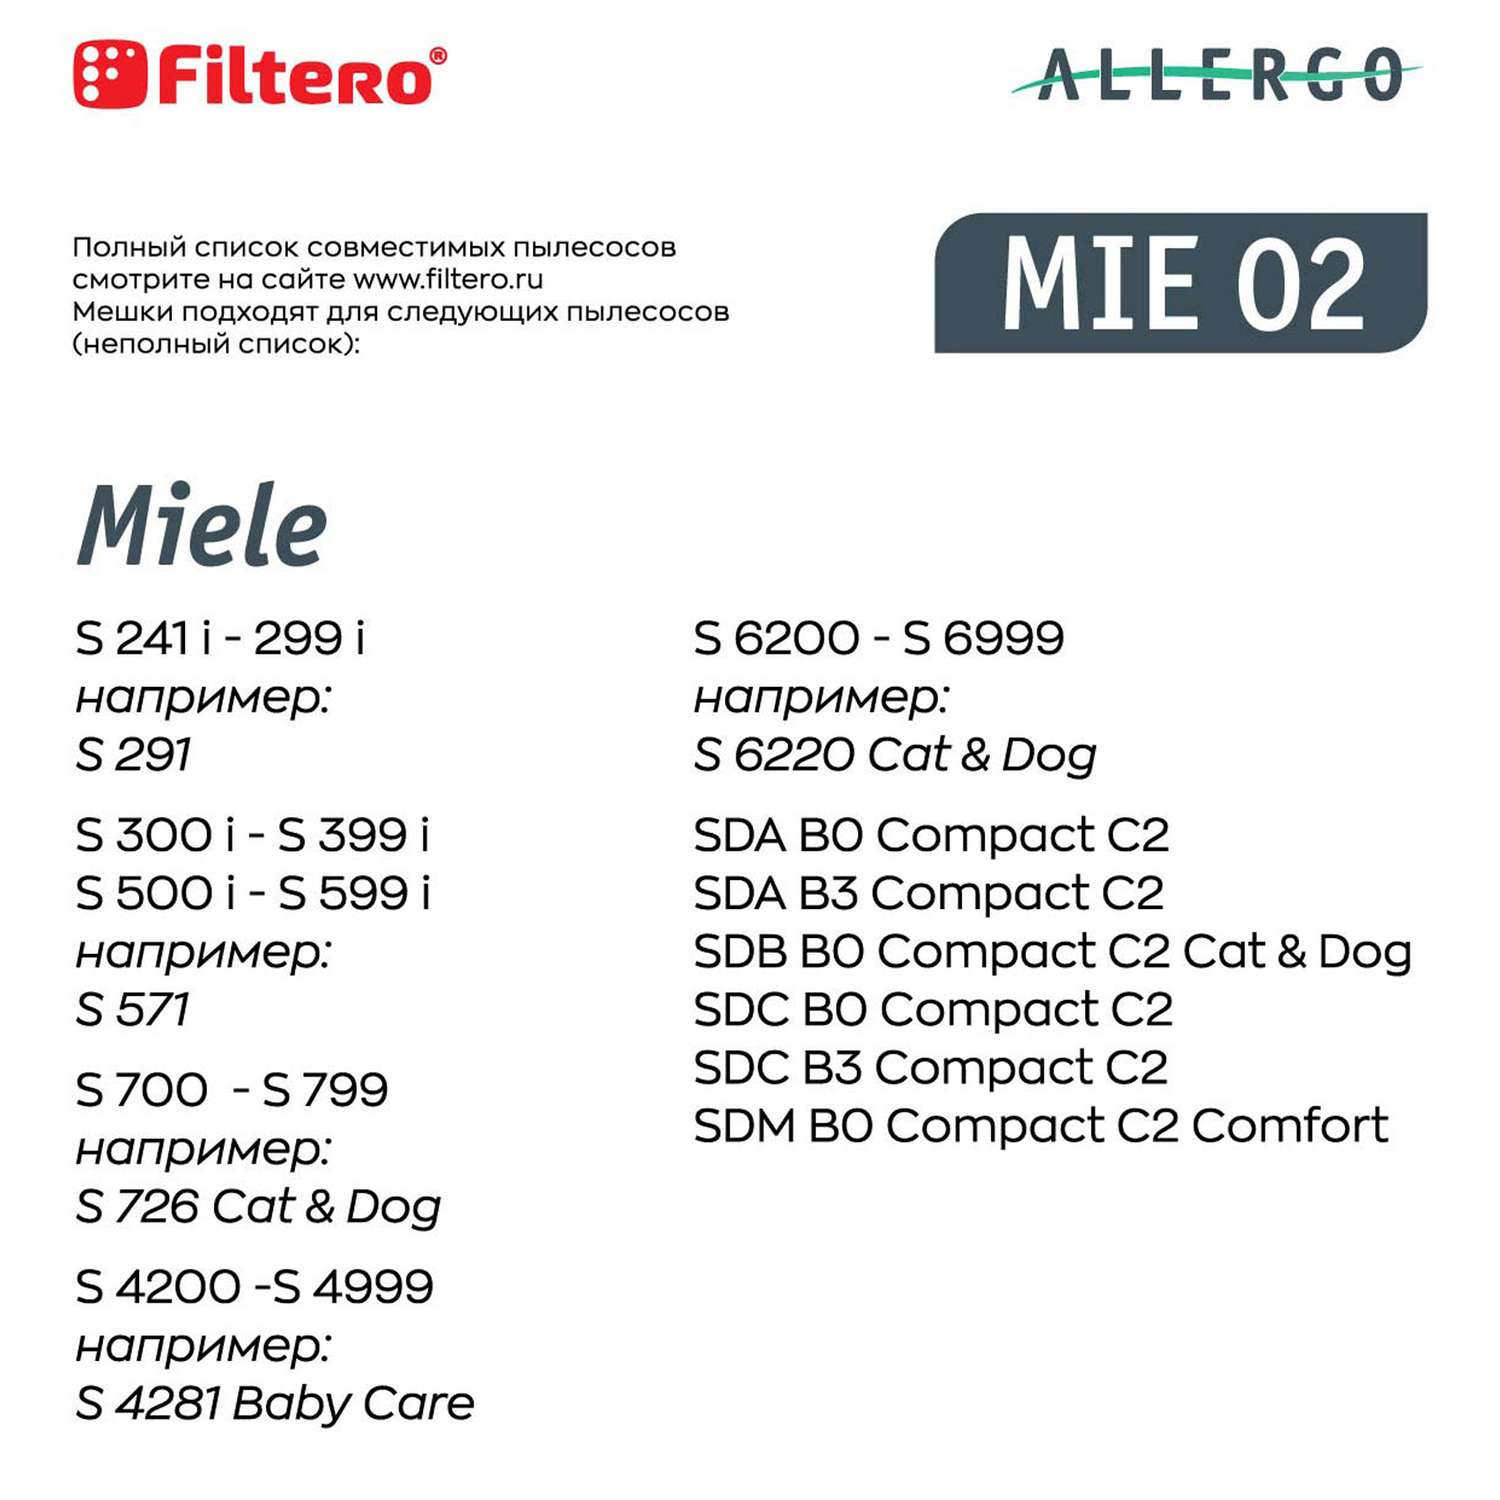 Пылесборники Filtero MIE 02 синтетические Allergo 4 шт - фото 9